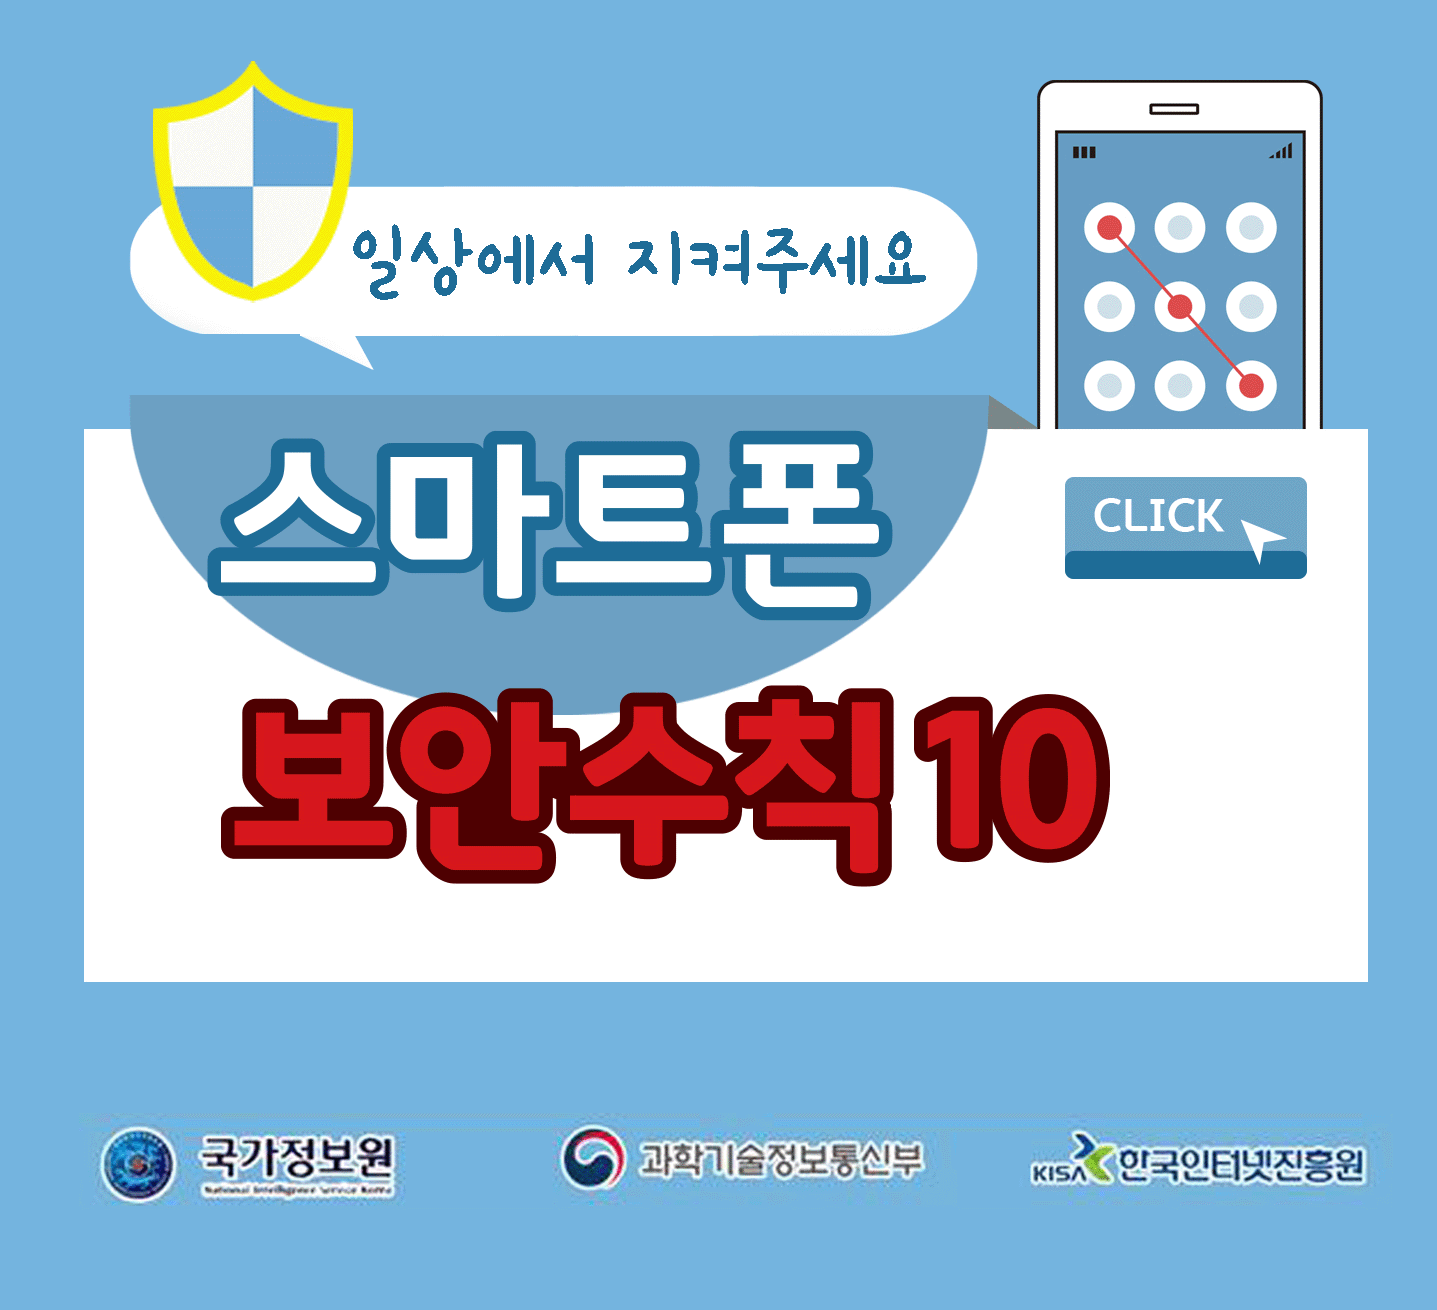 일상에서 지켜주세요
스마트폰 보안수칙 10 CLICK
국가정보원, 과학기술정보통신부, 한국인터넷진흥원;jsessionid=0A3B745773B207942B231EE4E20BBE7F